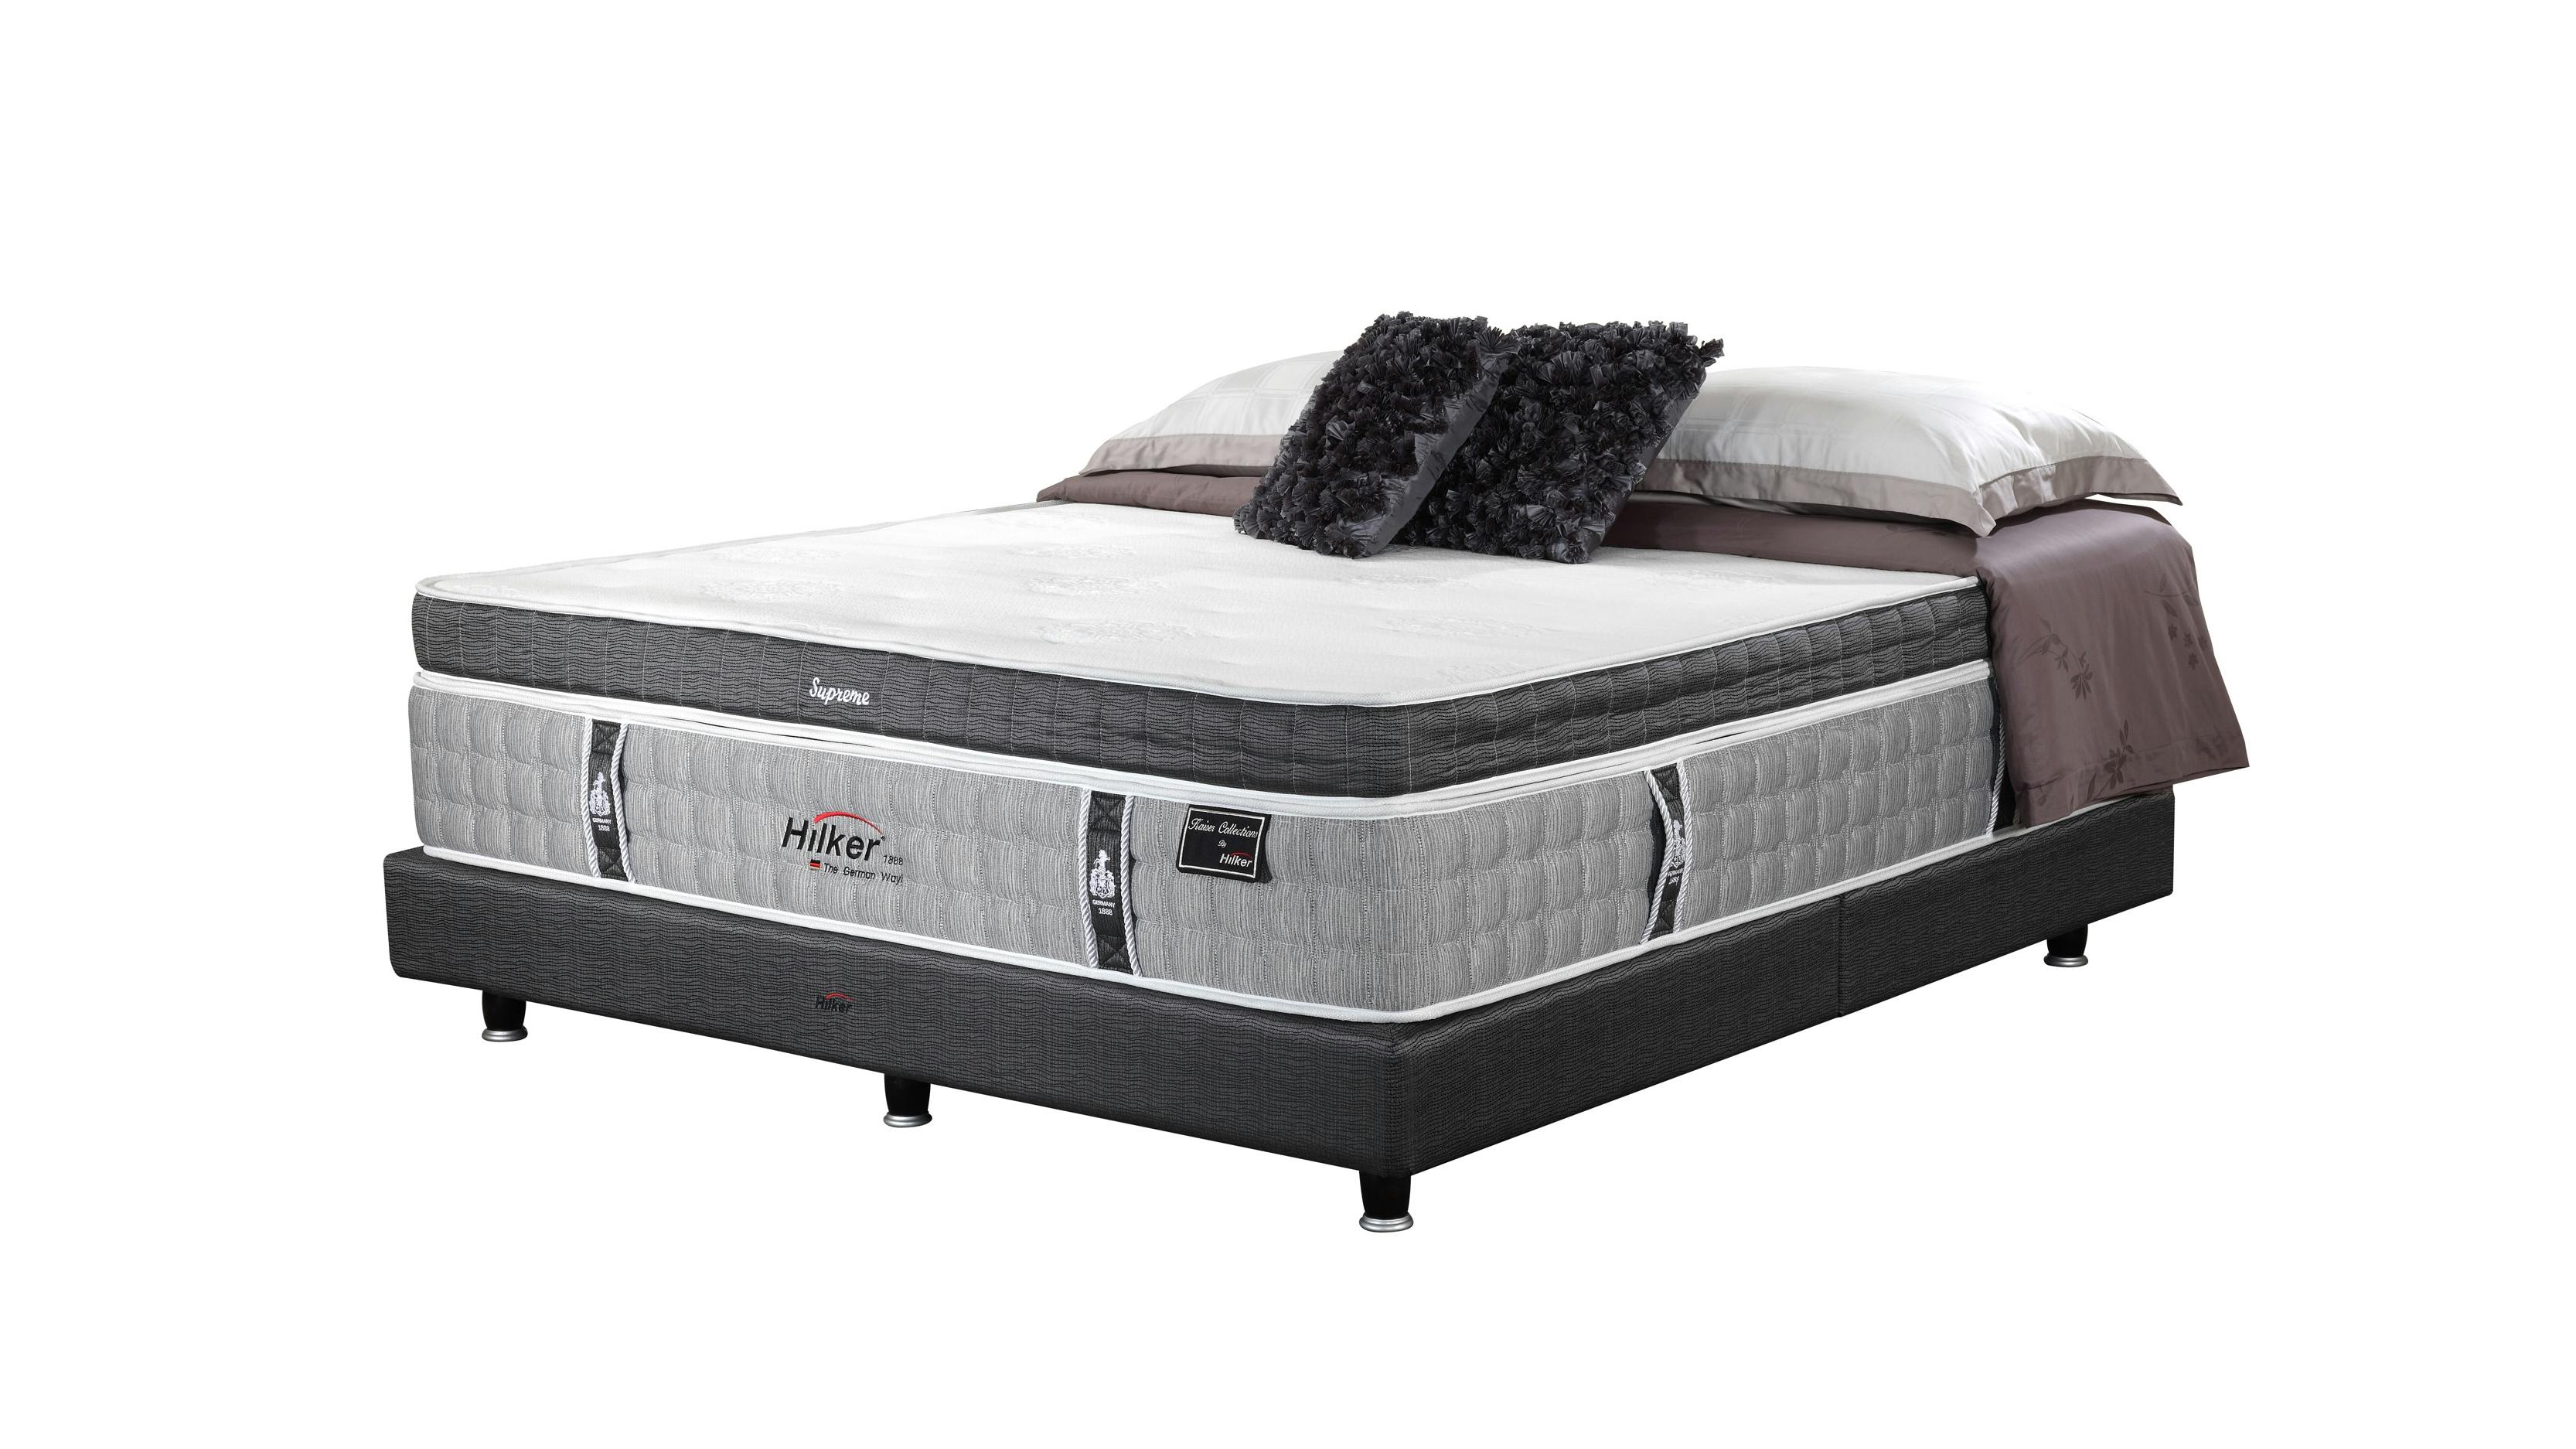 hilker mattress king size